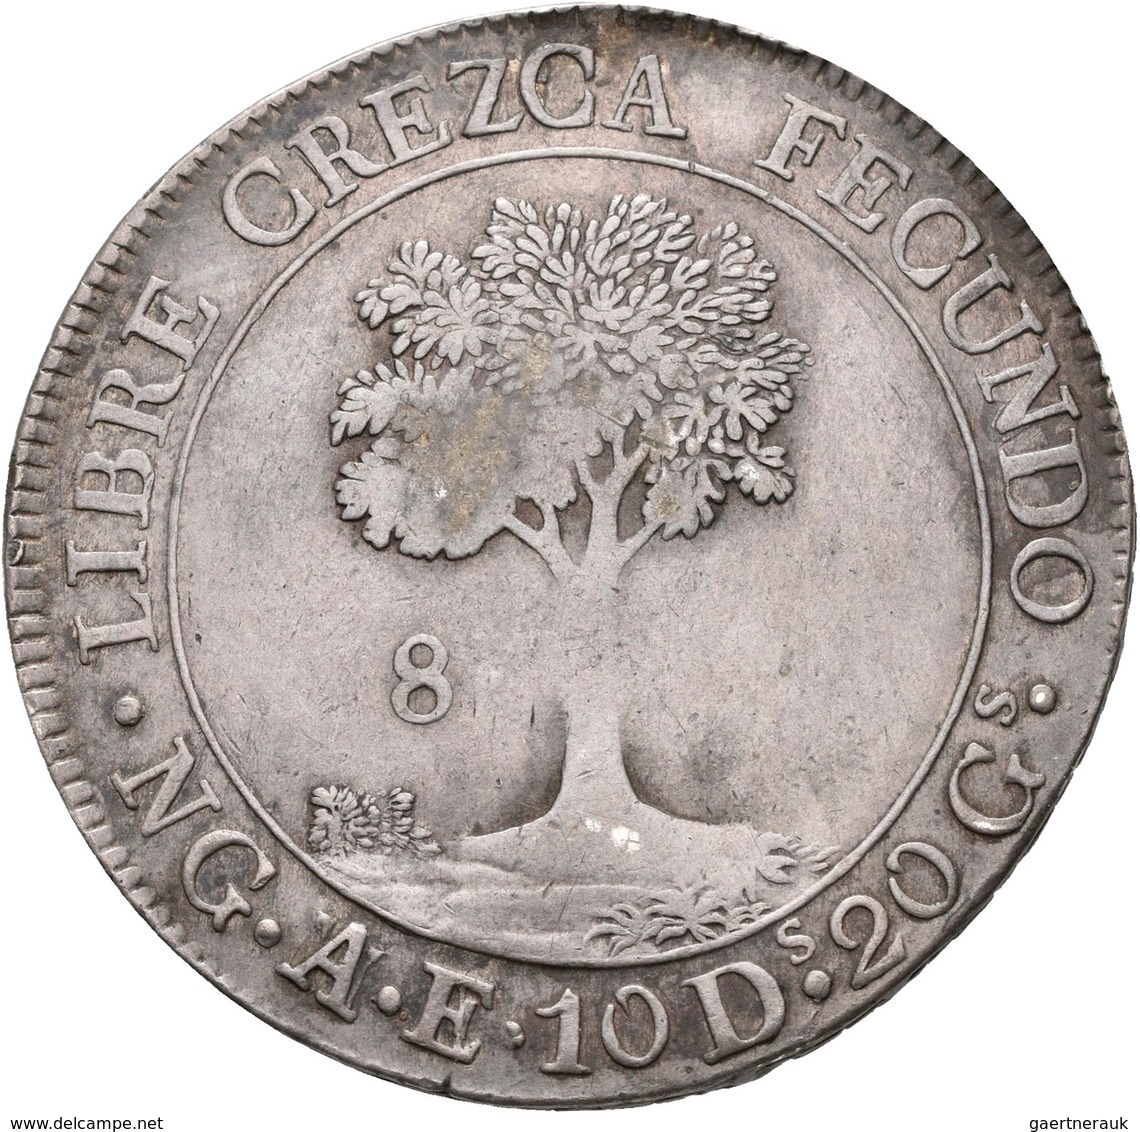 Guatemala: Zentral Amerikanische Republik: 8 Reales 1846, KM# 4, 26,87 G, Sehr Schön. - Guatemala